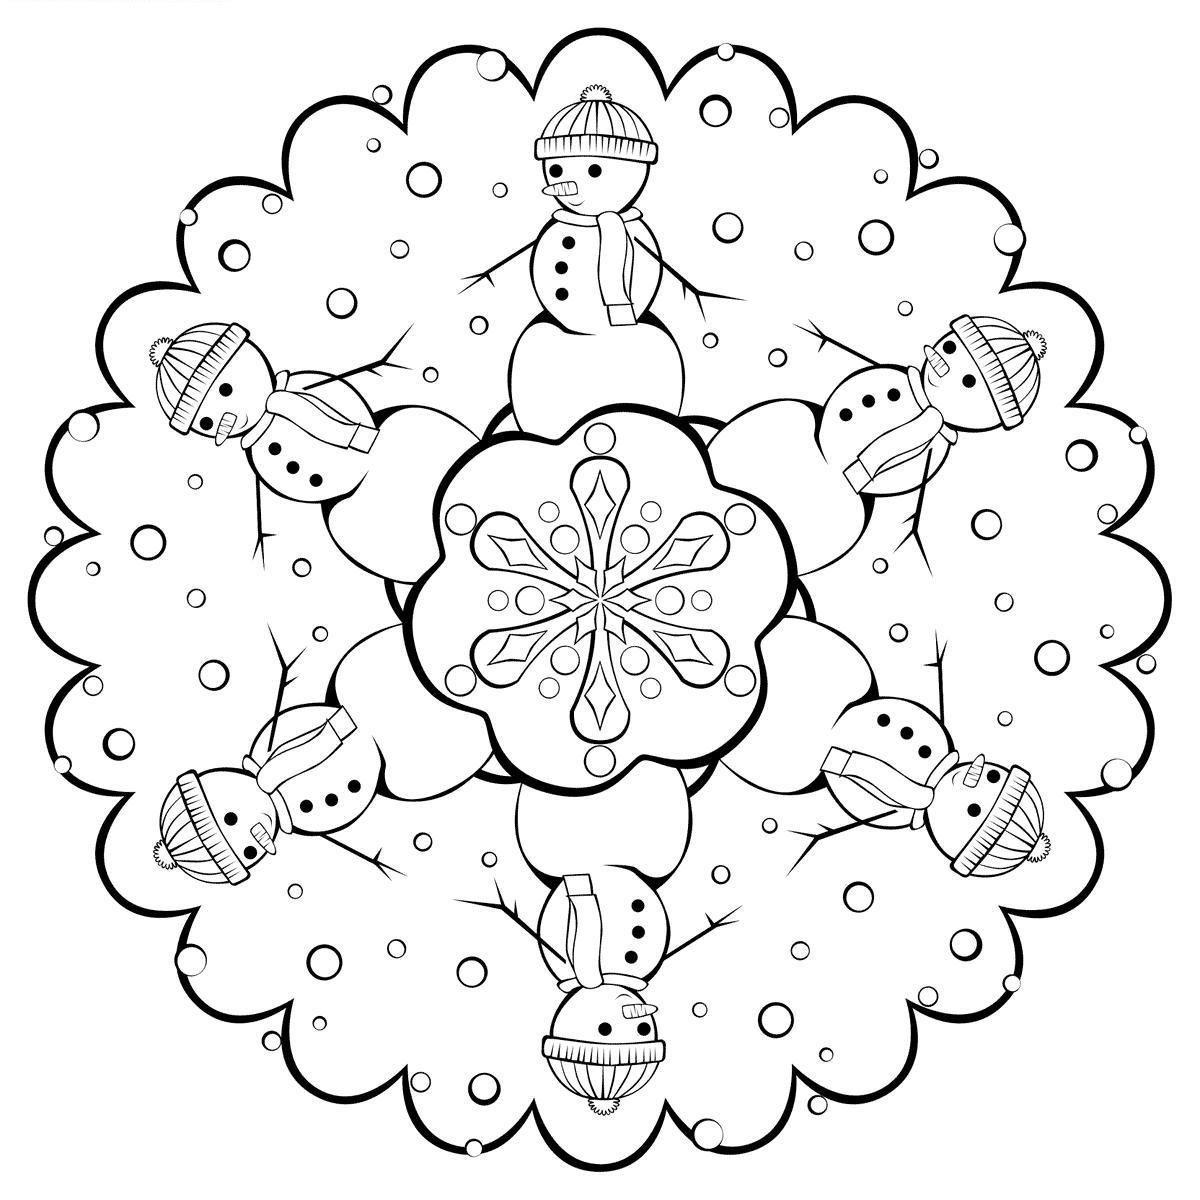 Раскраска зима с снежинкой, снеговиком и цветком для распечатки бесплатно (снежинка, цветок)